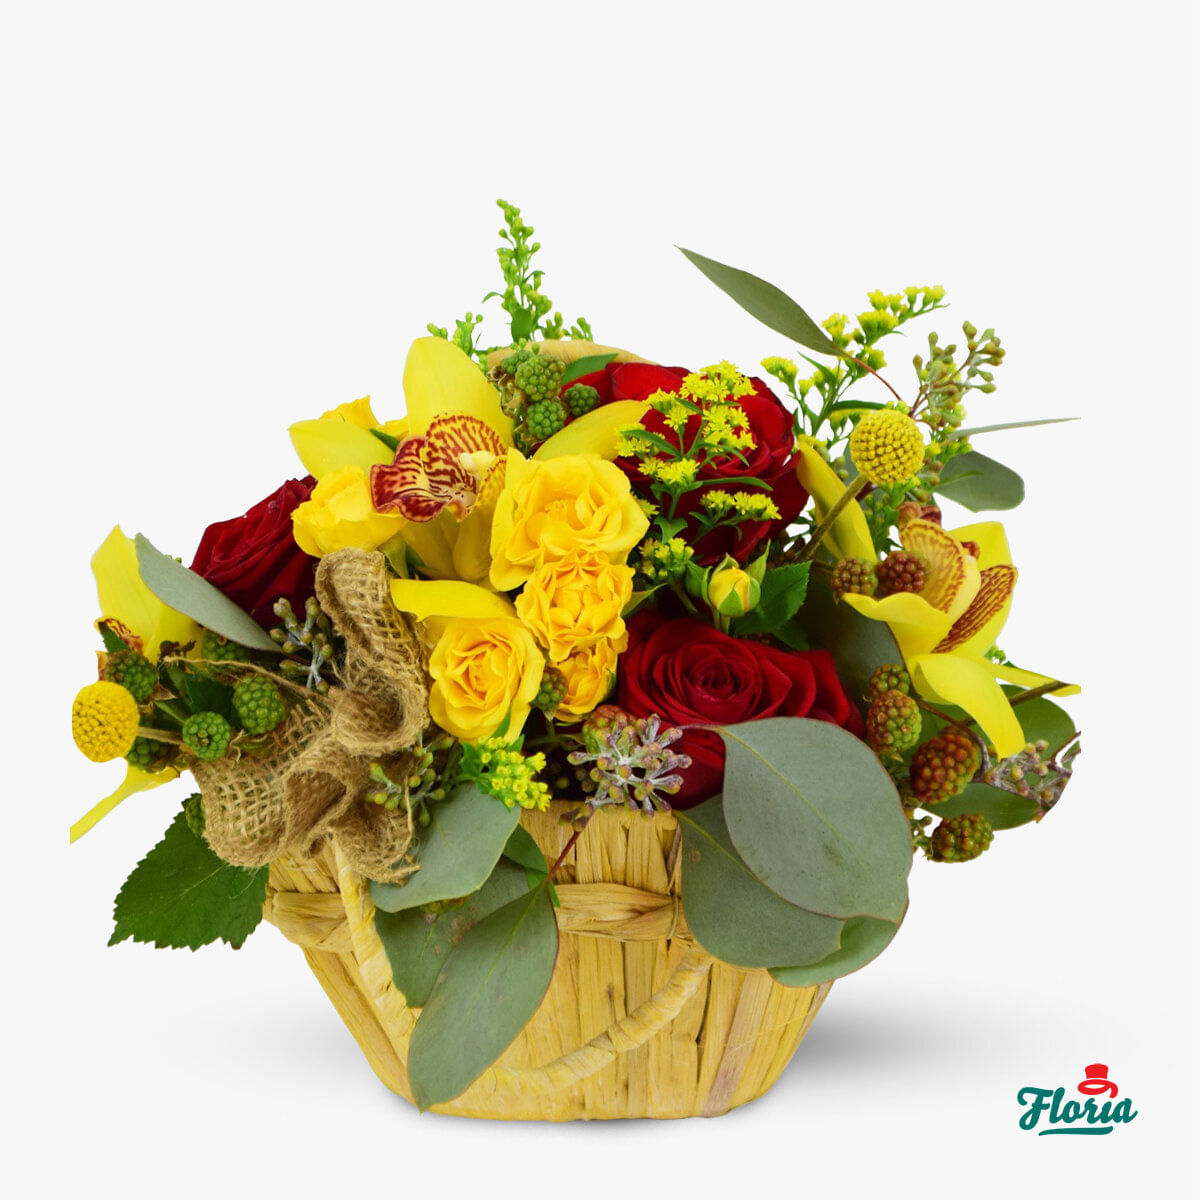 Aranjament floral – Adagio de toamna – premium Adagio